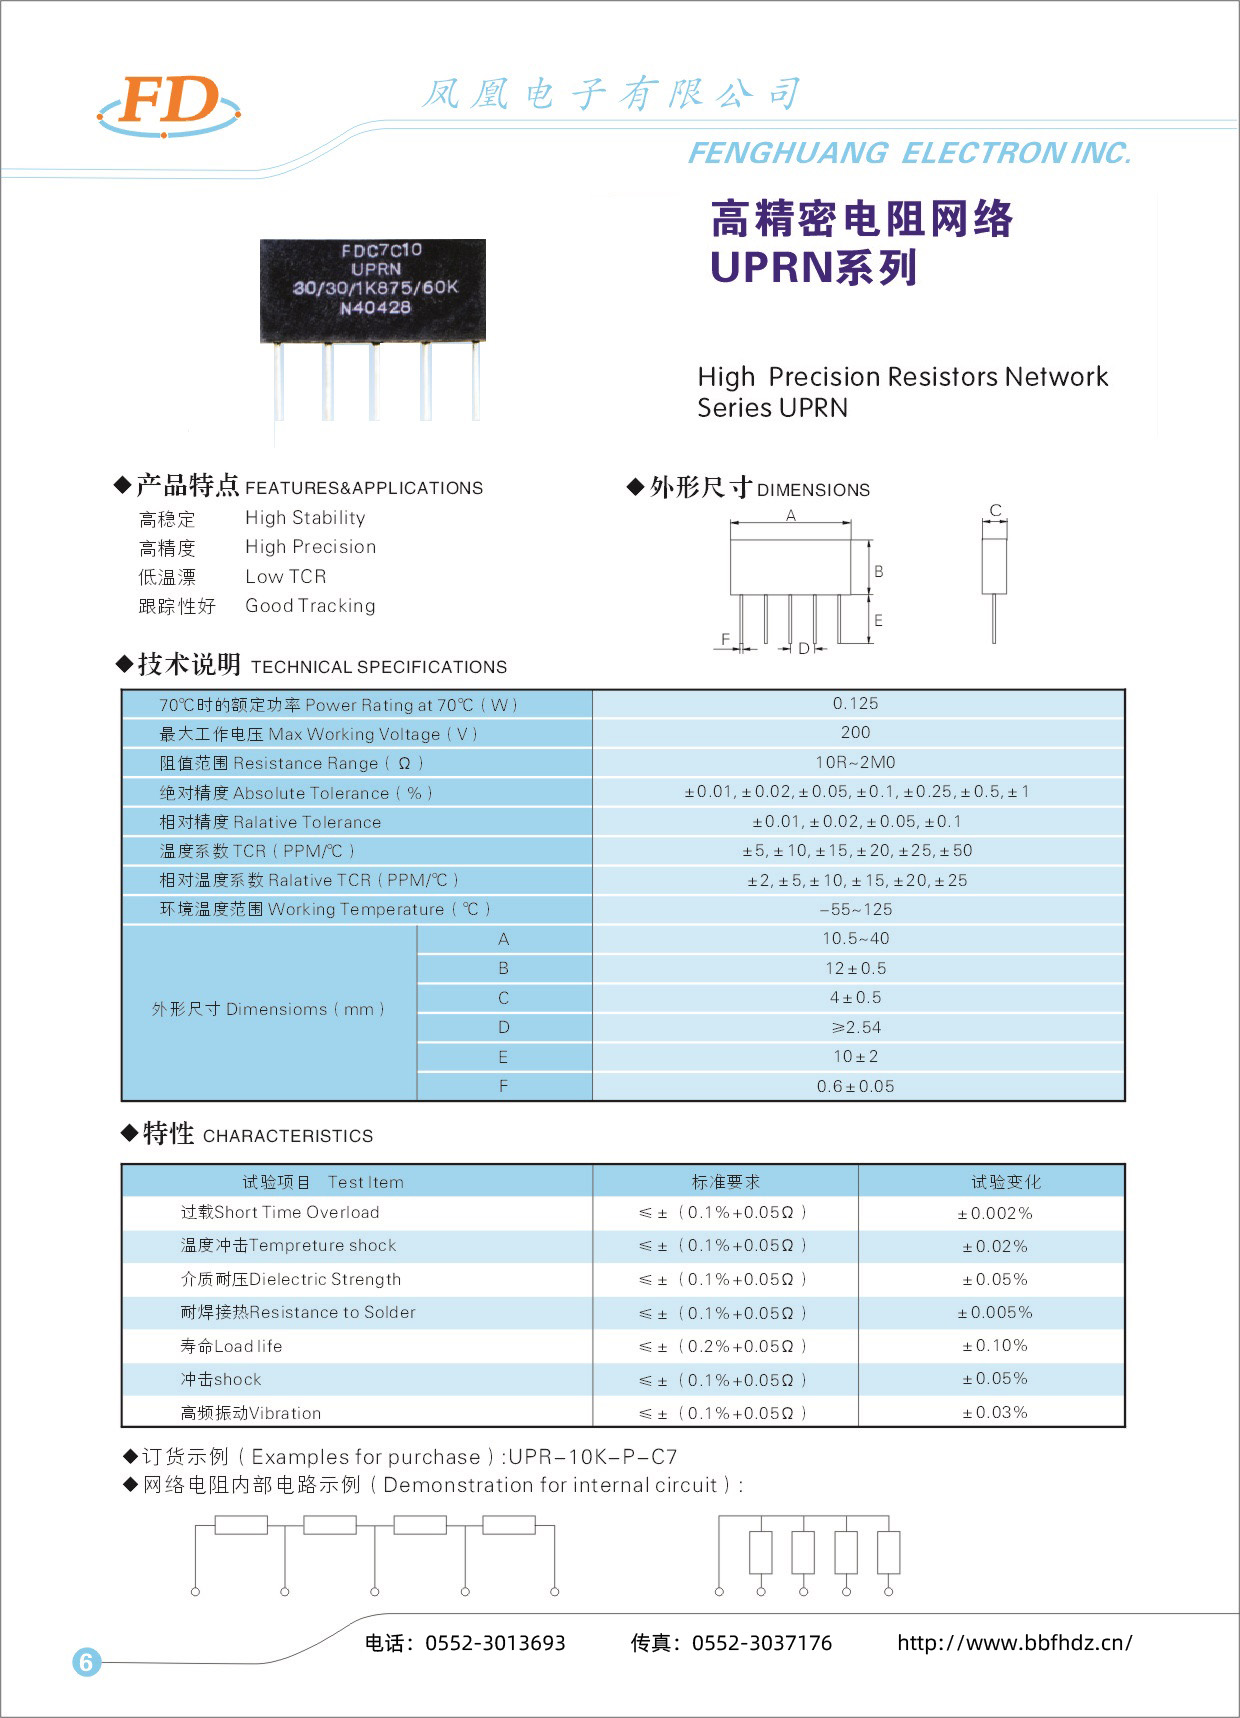 高精密电阻网络UPRN系列-1.jpg